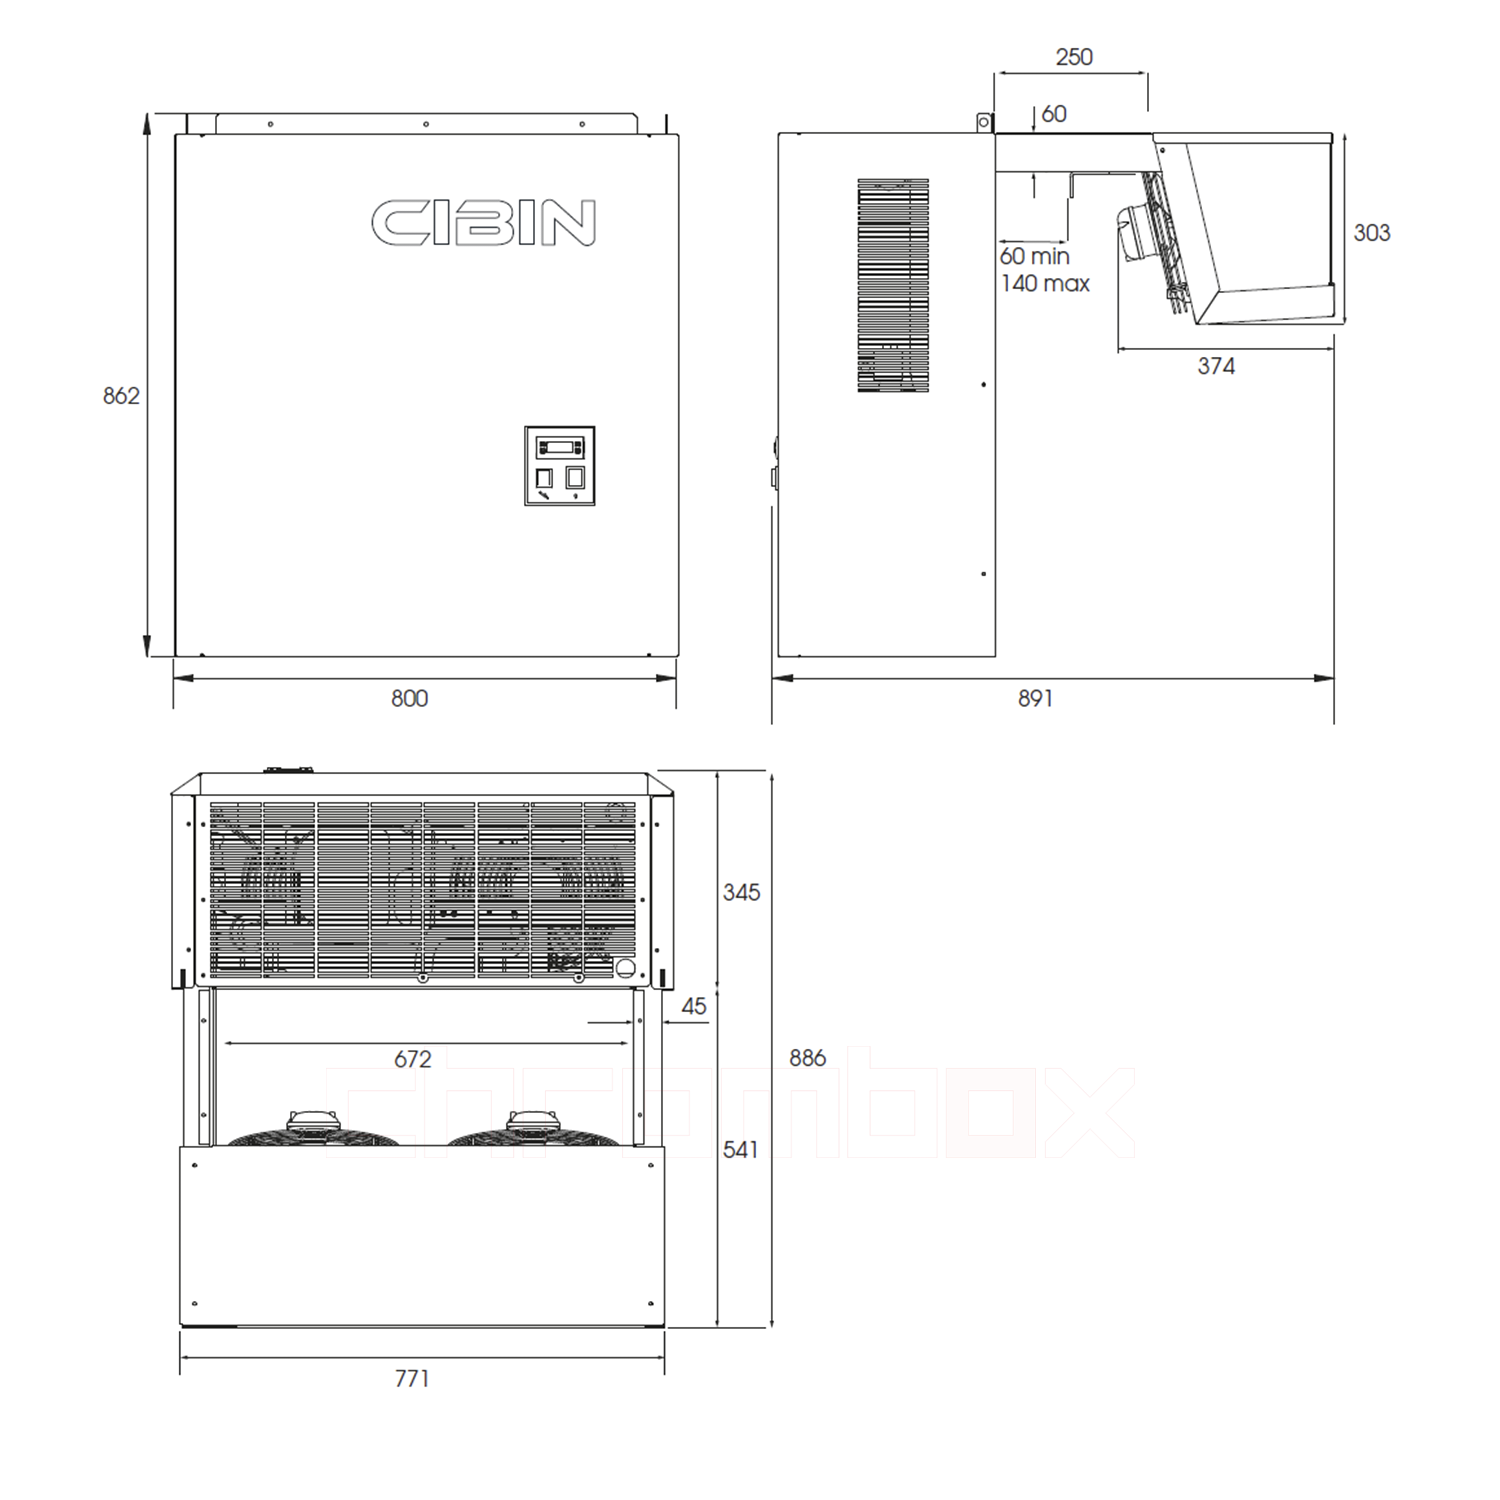 Technische Zeichnung zu Huckepack-Tiefkühlaggregat Cibin LAIKA bis 12 m3, steckerfertig